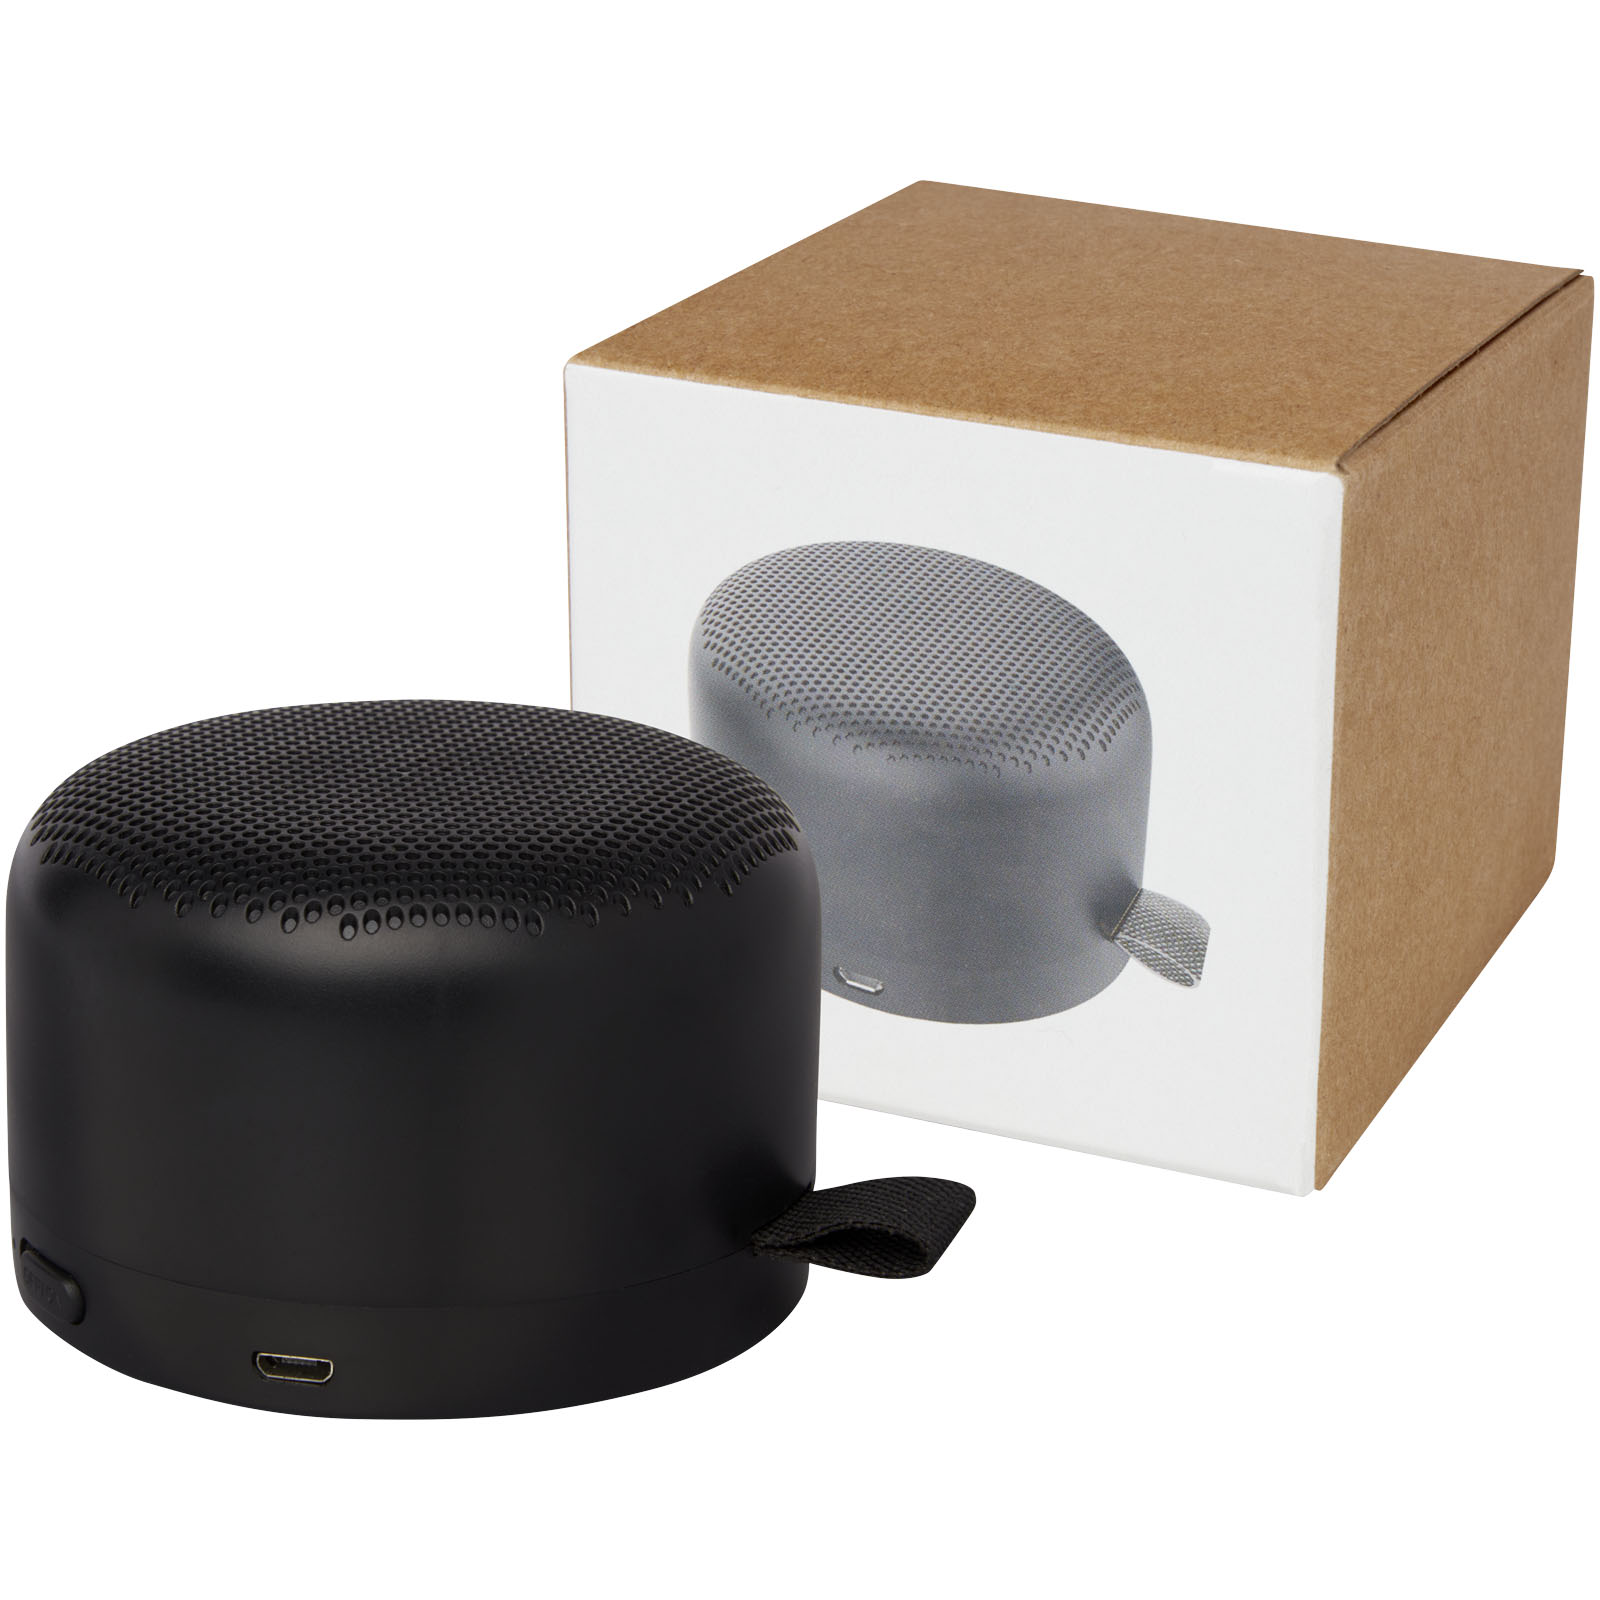 Speakers - Loop 5W recycled plastic Bluetooth speaker